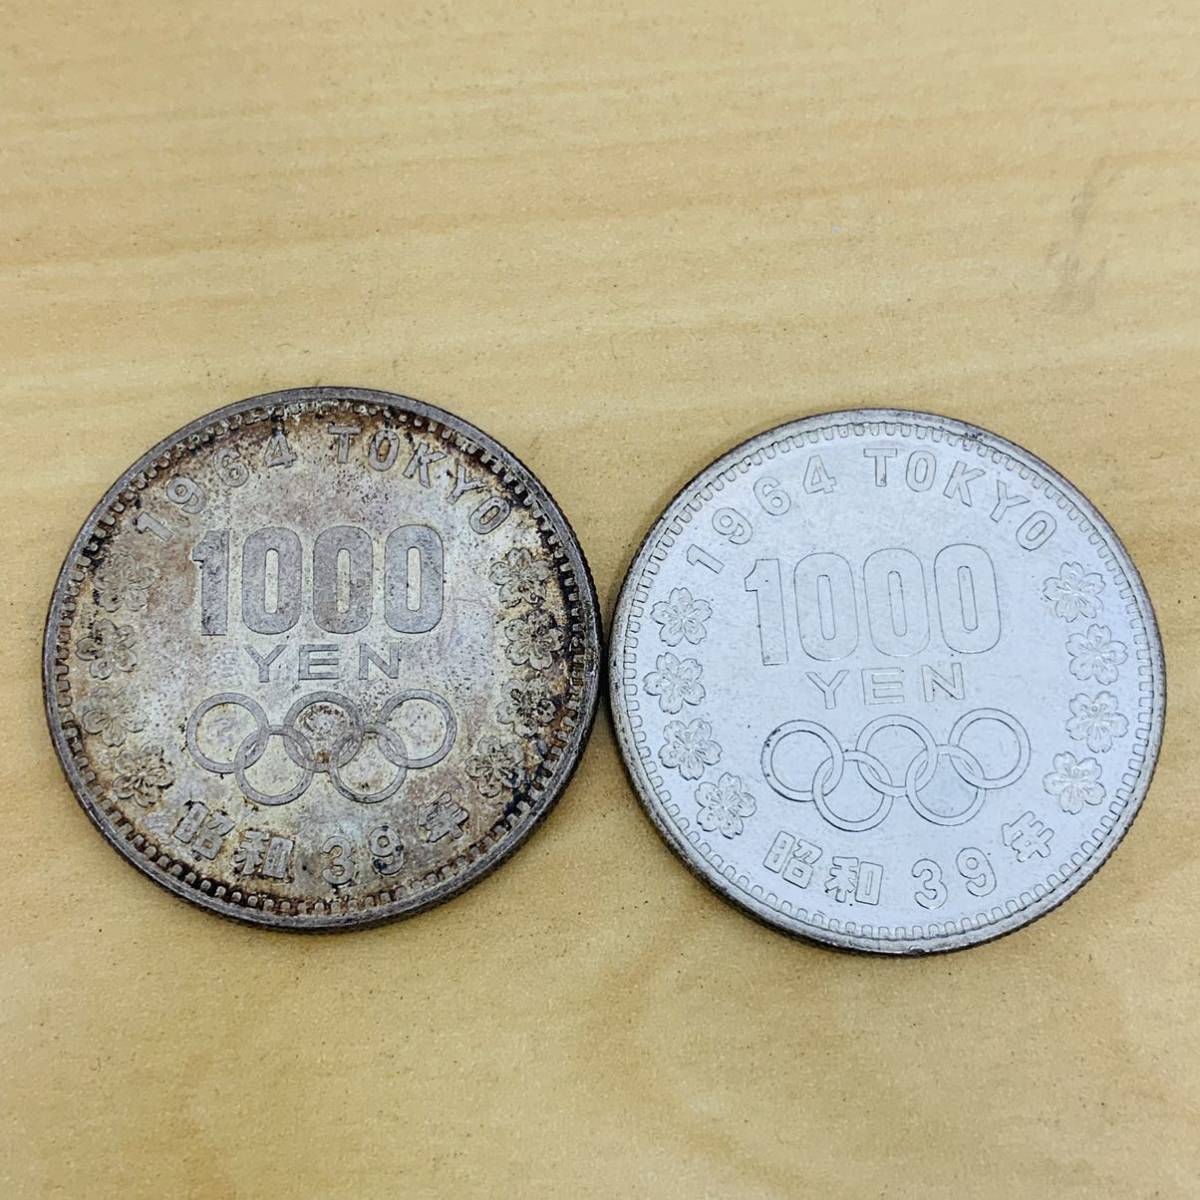 1964東京オリンピック記念銀貨2枚セット